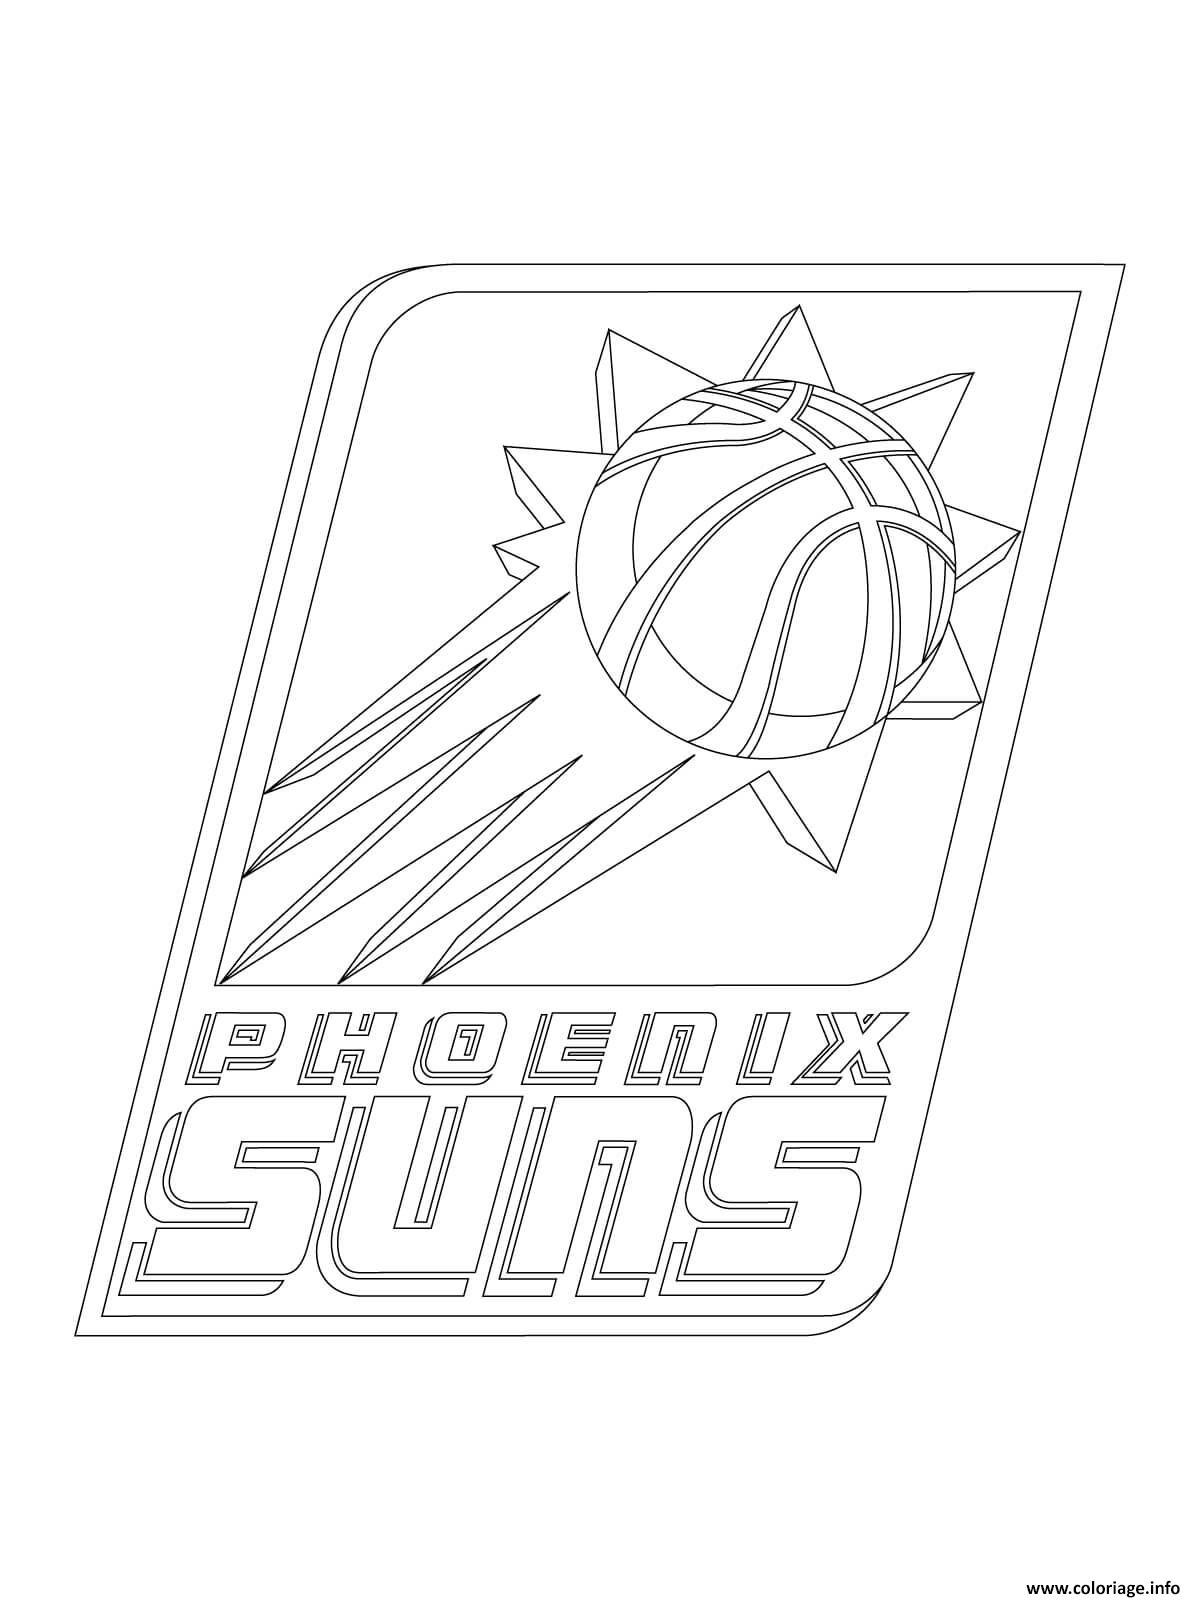 Dessin phoenix suns logo nba sport Coloriage Gratuit à Imprimer